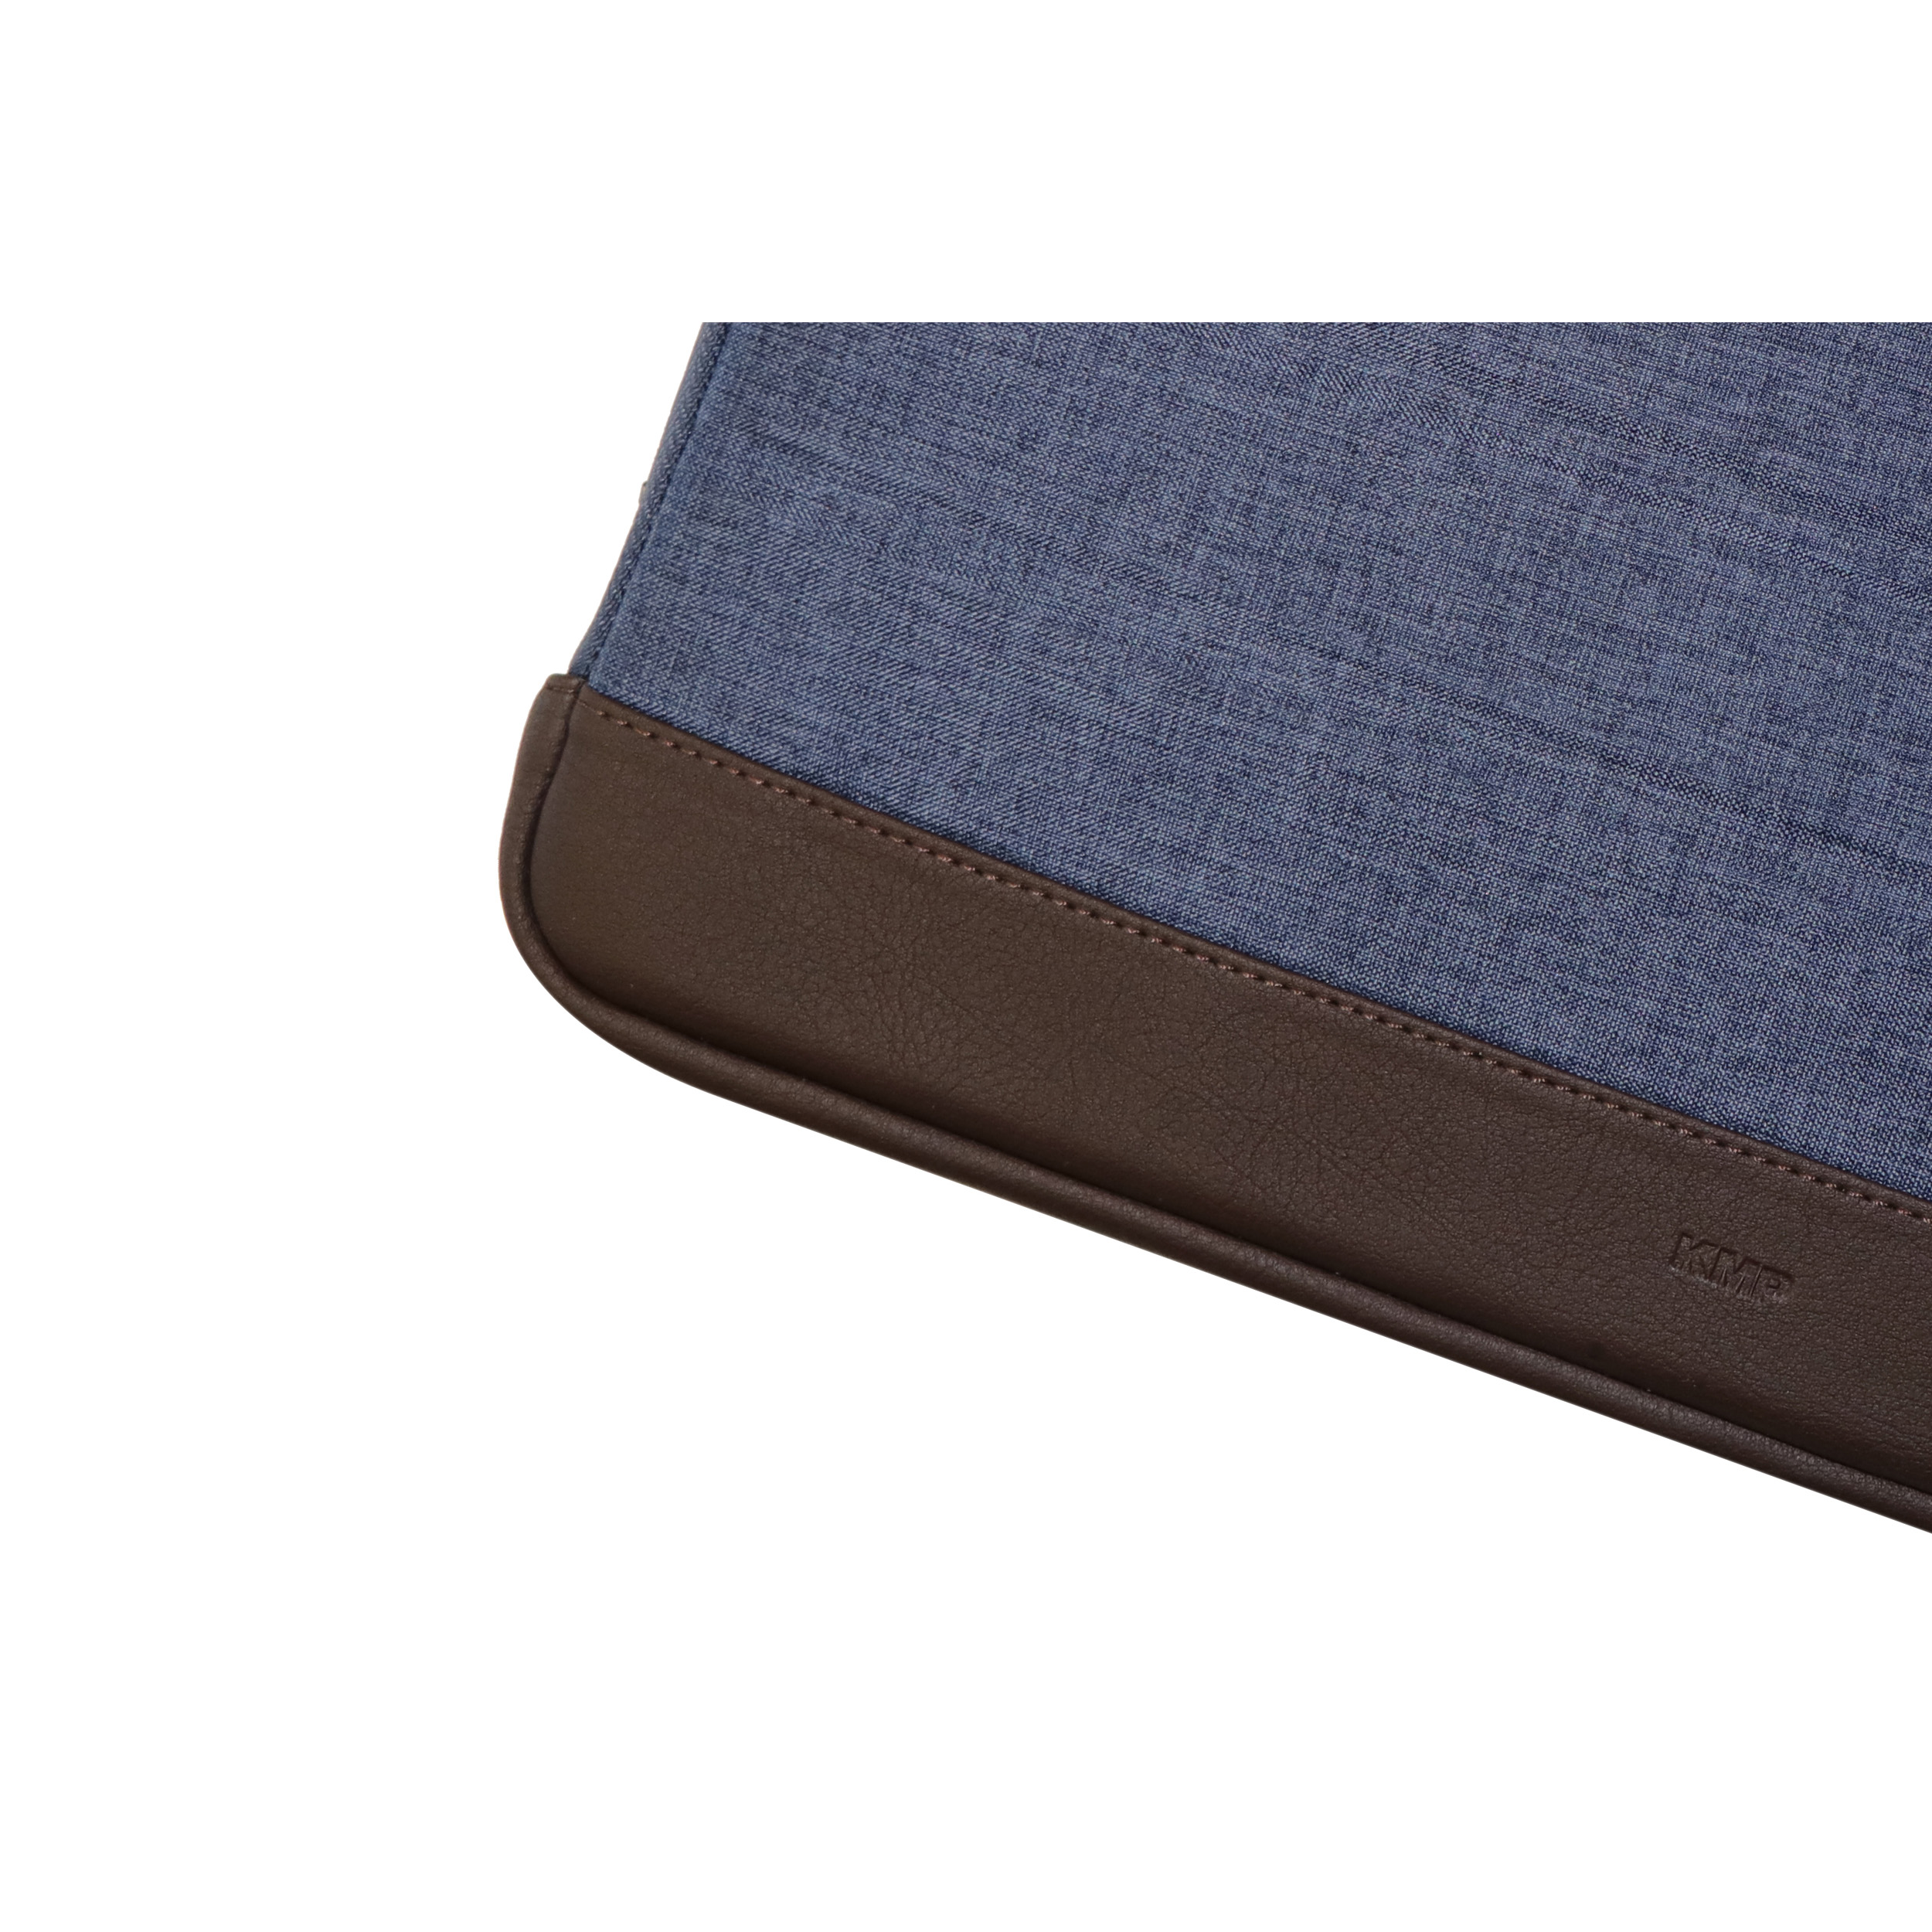 KMP Sleeve für Sleeve MacBook für Blue/Brown Textil, Pro Notebook biobasiertes Apple Material / Sleeve brown Lederoptik, blue in 13